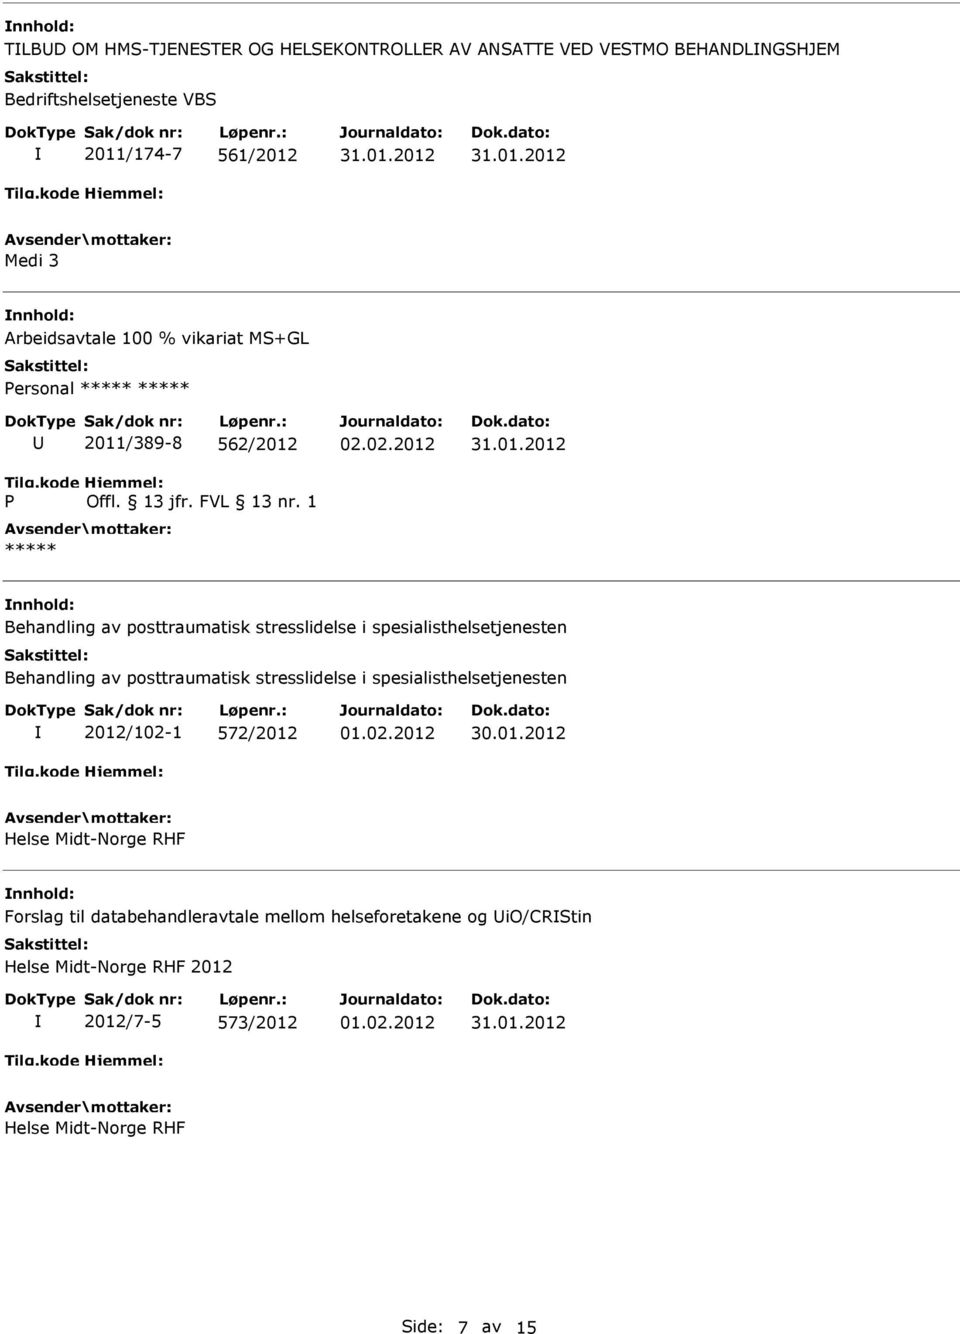 spesialisthelsetjenesten Behandling av posttraumatisk stresslidelse i spesialisthelsetjenesten 2012/102-1 572/2012 Helse